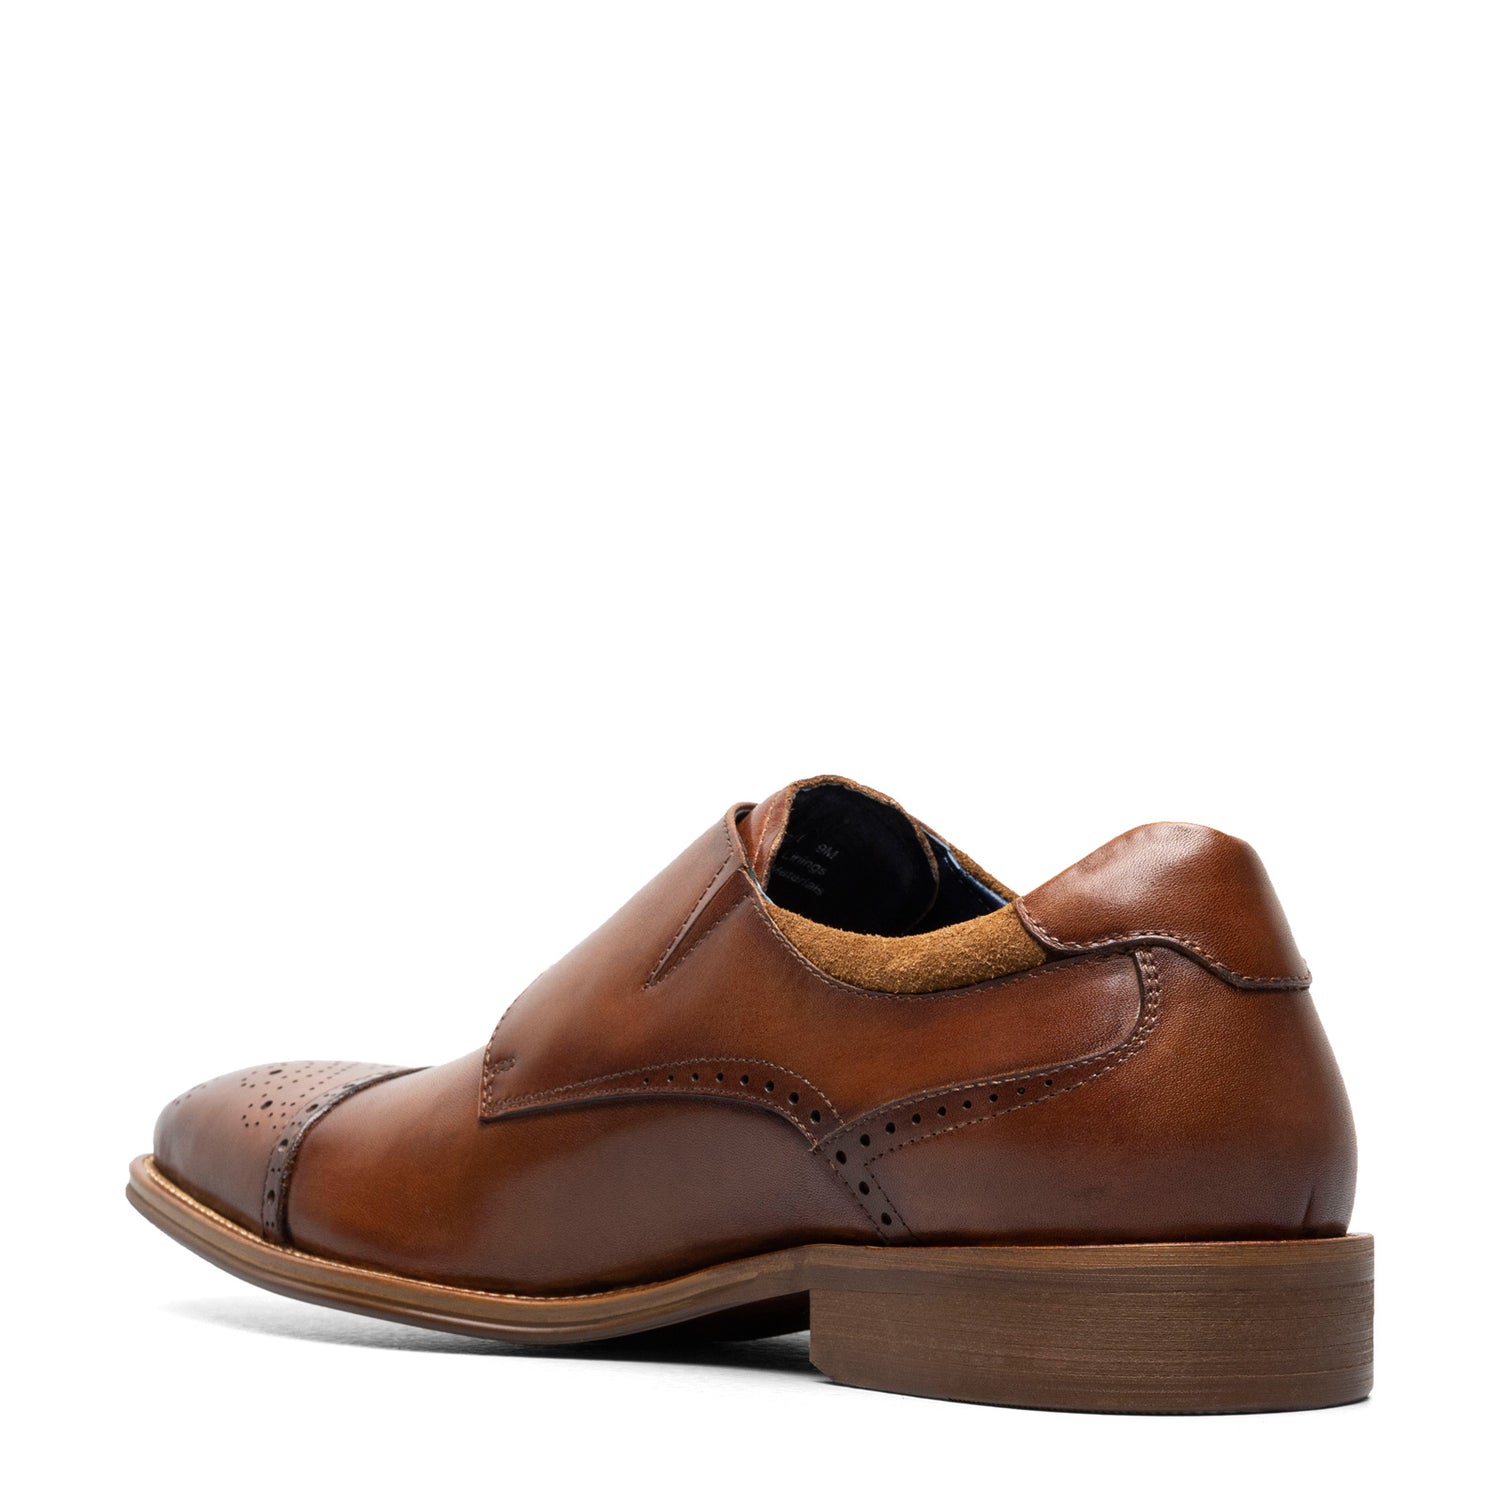 Peltz Shoes  Men's Stacy Adams Mathis Cap Toe Monk Strap Cognac 25540-221